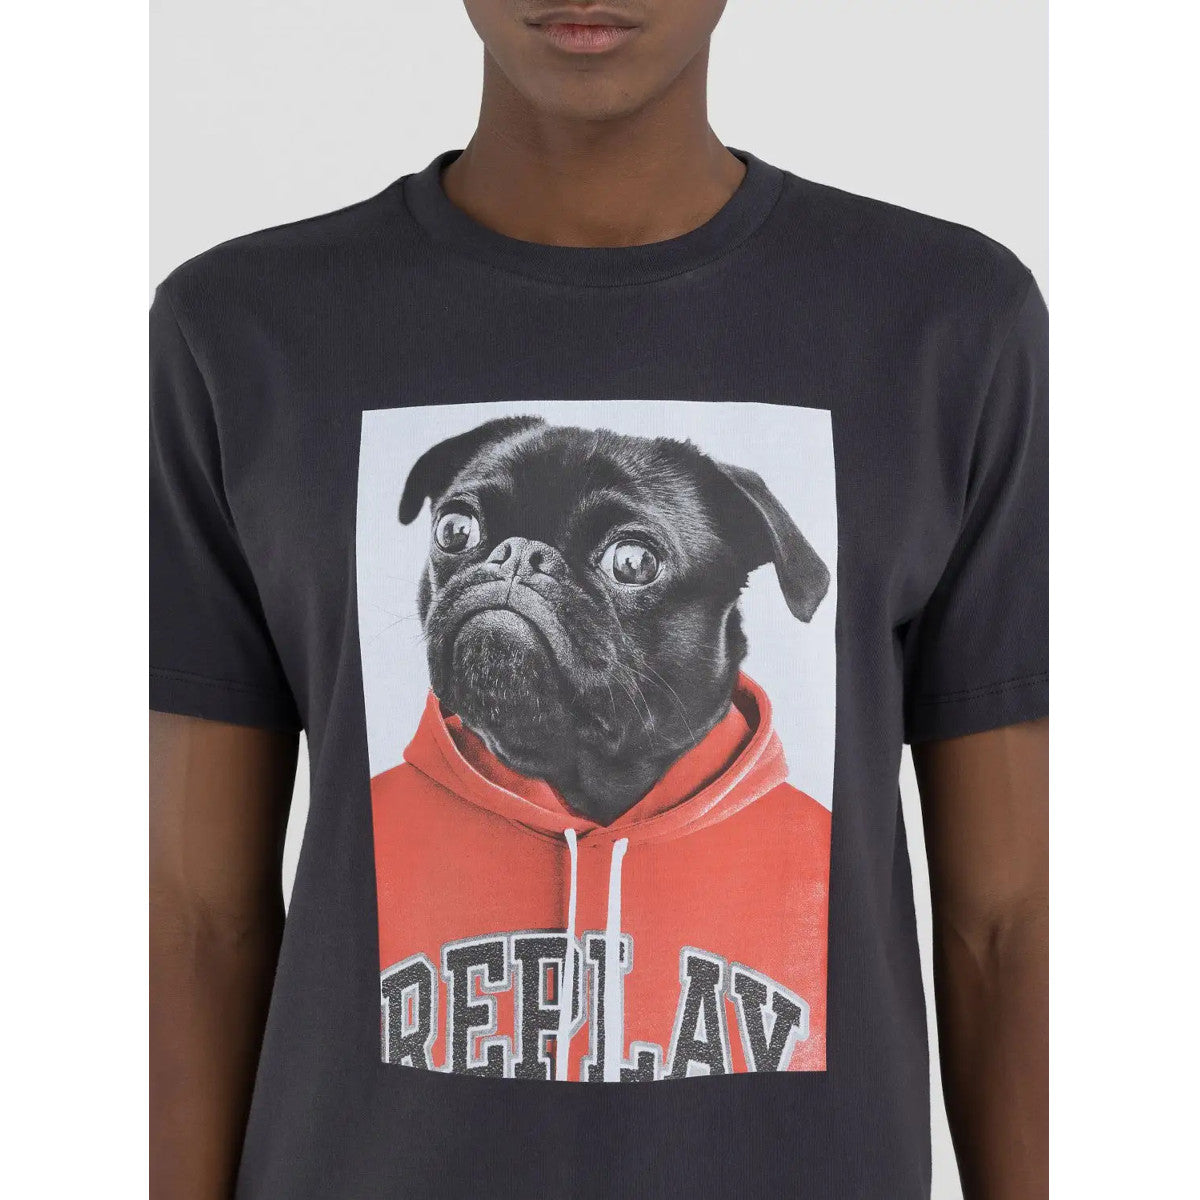 Replay Dog Print T-Shirt 998 Black